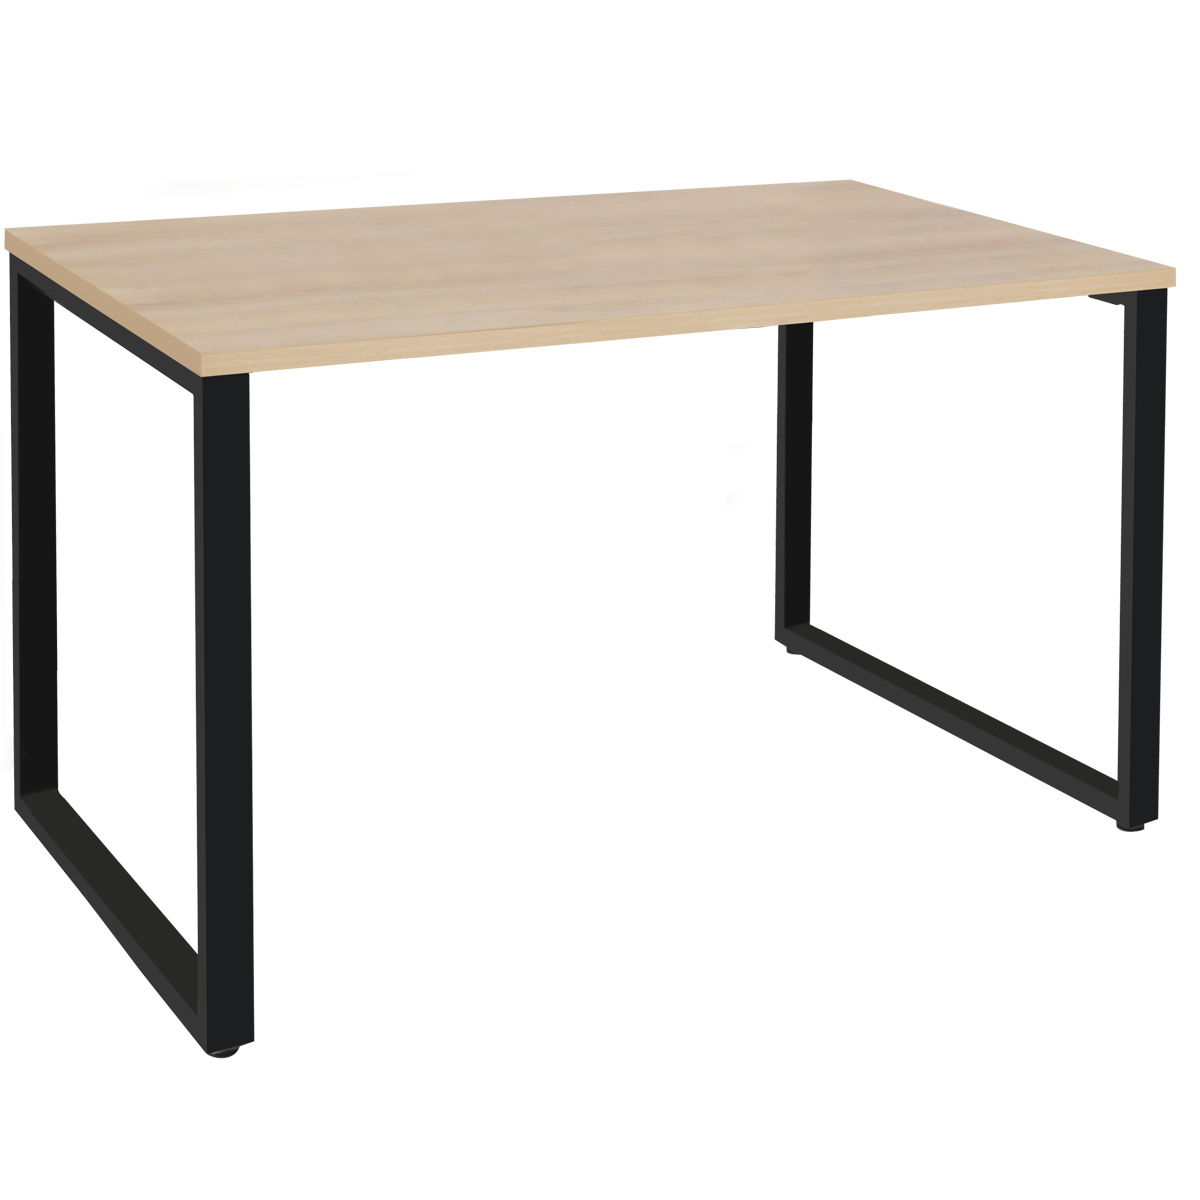 会議用テーブル E-EK-1590 幅1500x奥行900x高さ720mm 角型 会議